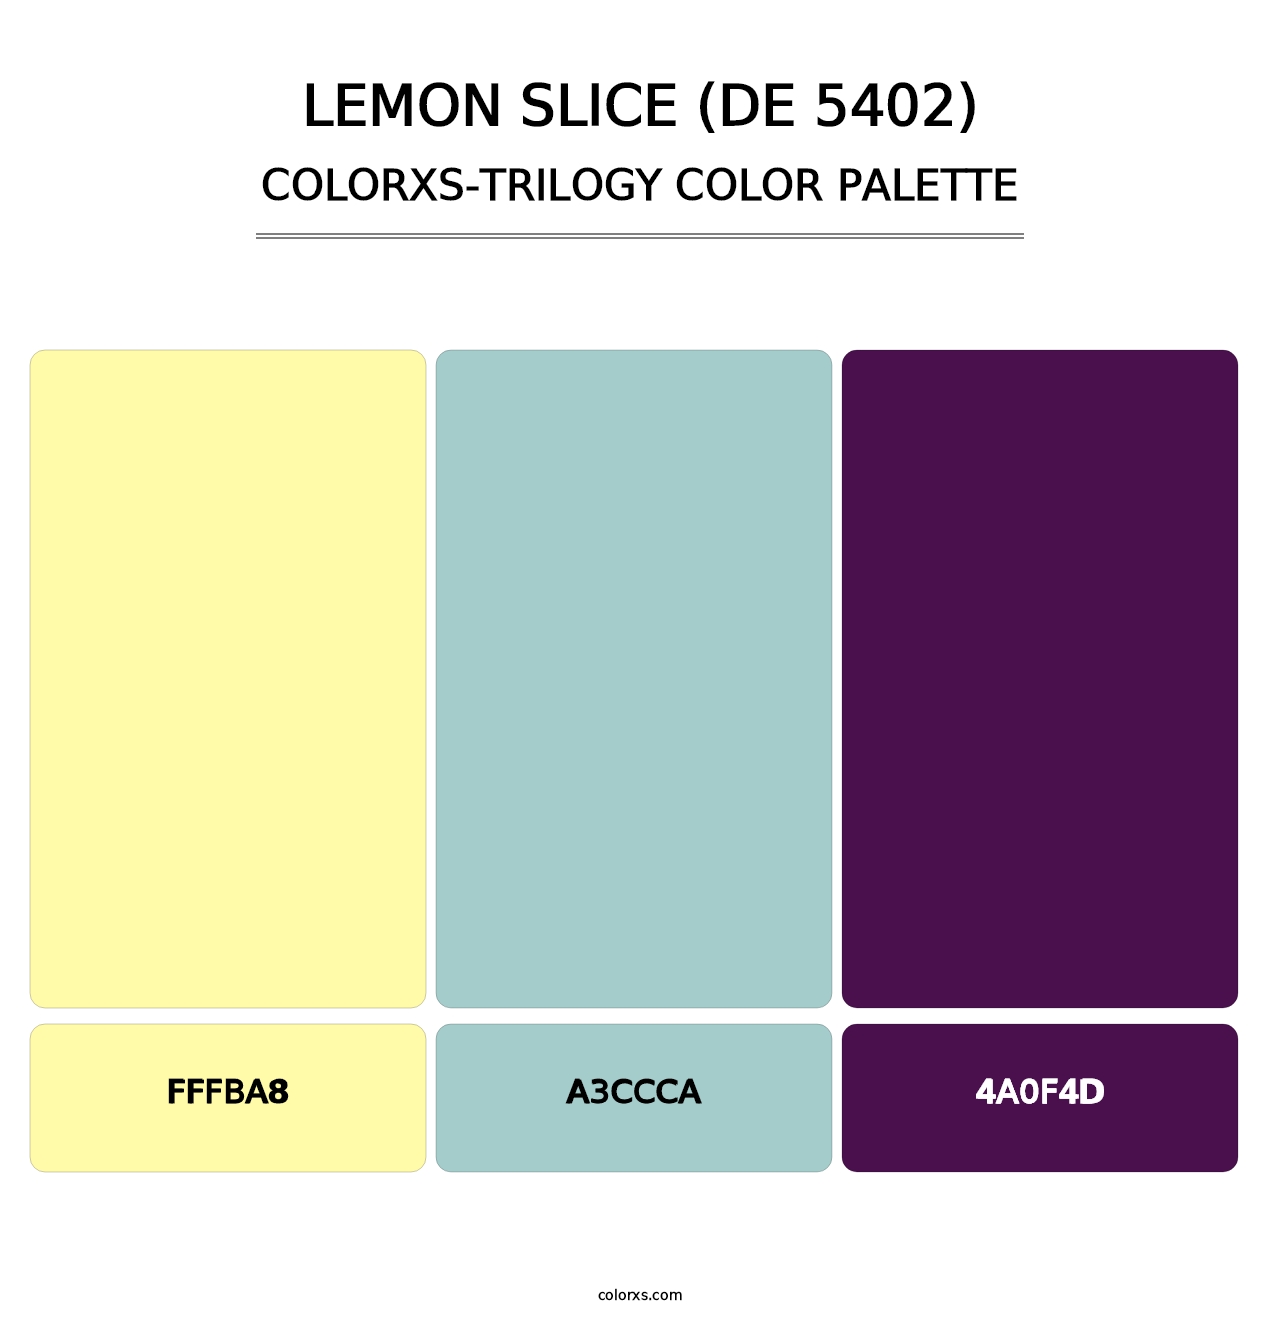 Lemon Slice (DE 5402) - Colorxs Trilogy Palette